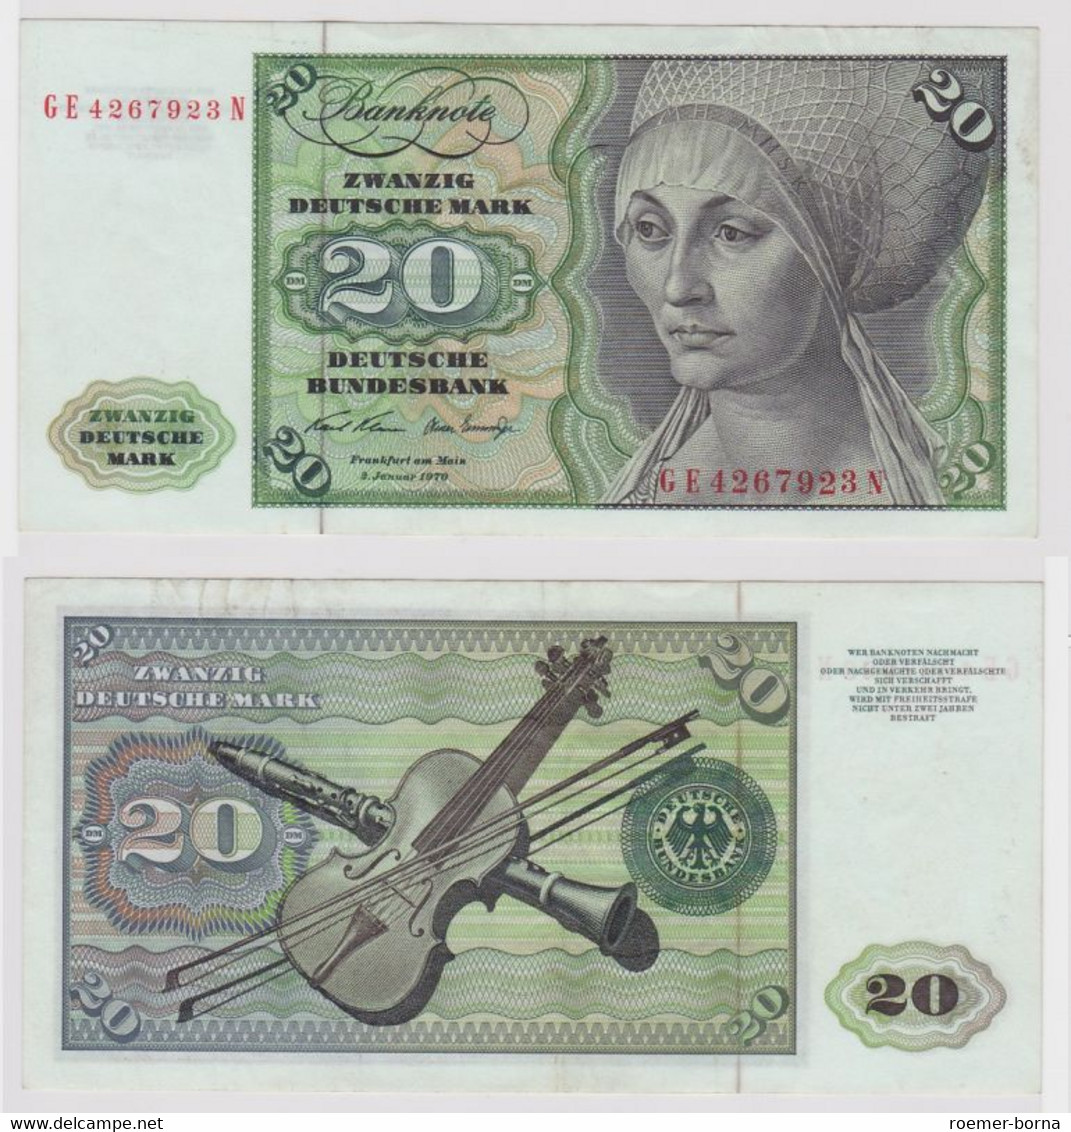 T148278 Banknote 20 DM Deutsche Mark Ro. 271b Schein 2.Jan. 1970 KN GE 4267923 N - 20 Deutsche Mark